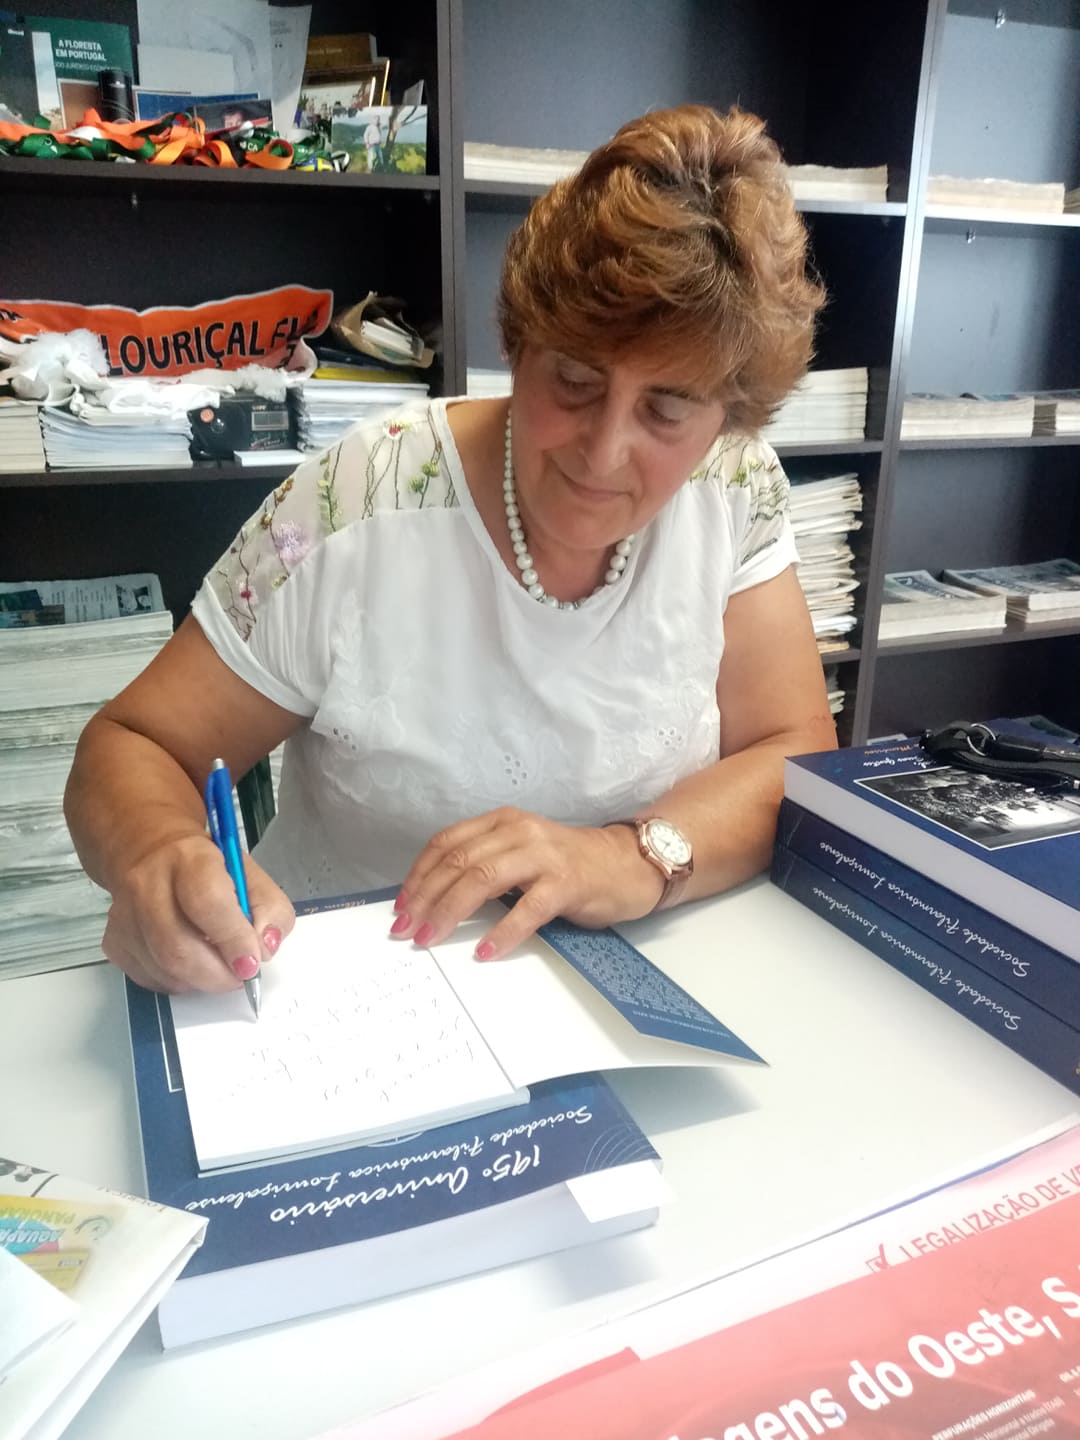 Louriçal: Palmira de Oliveira lança segundo livro